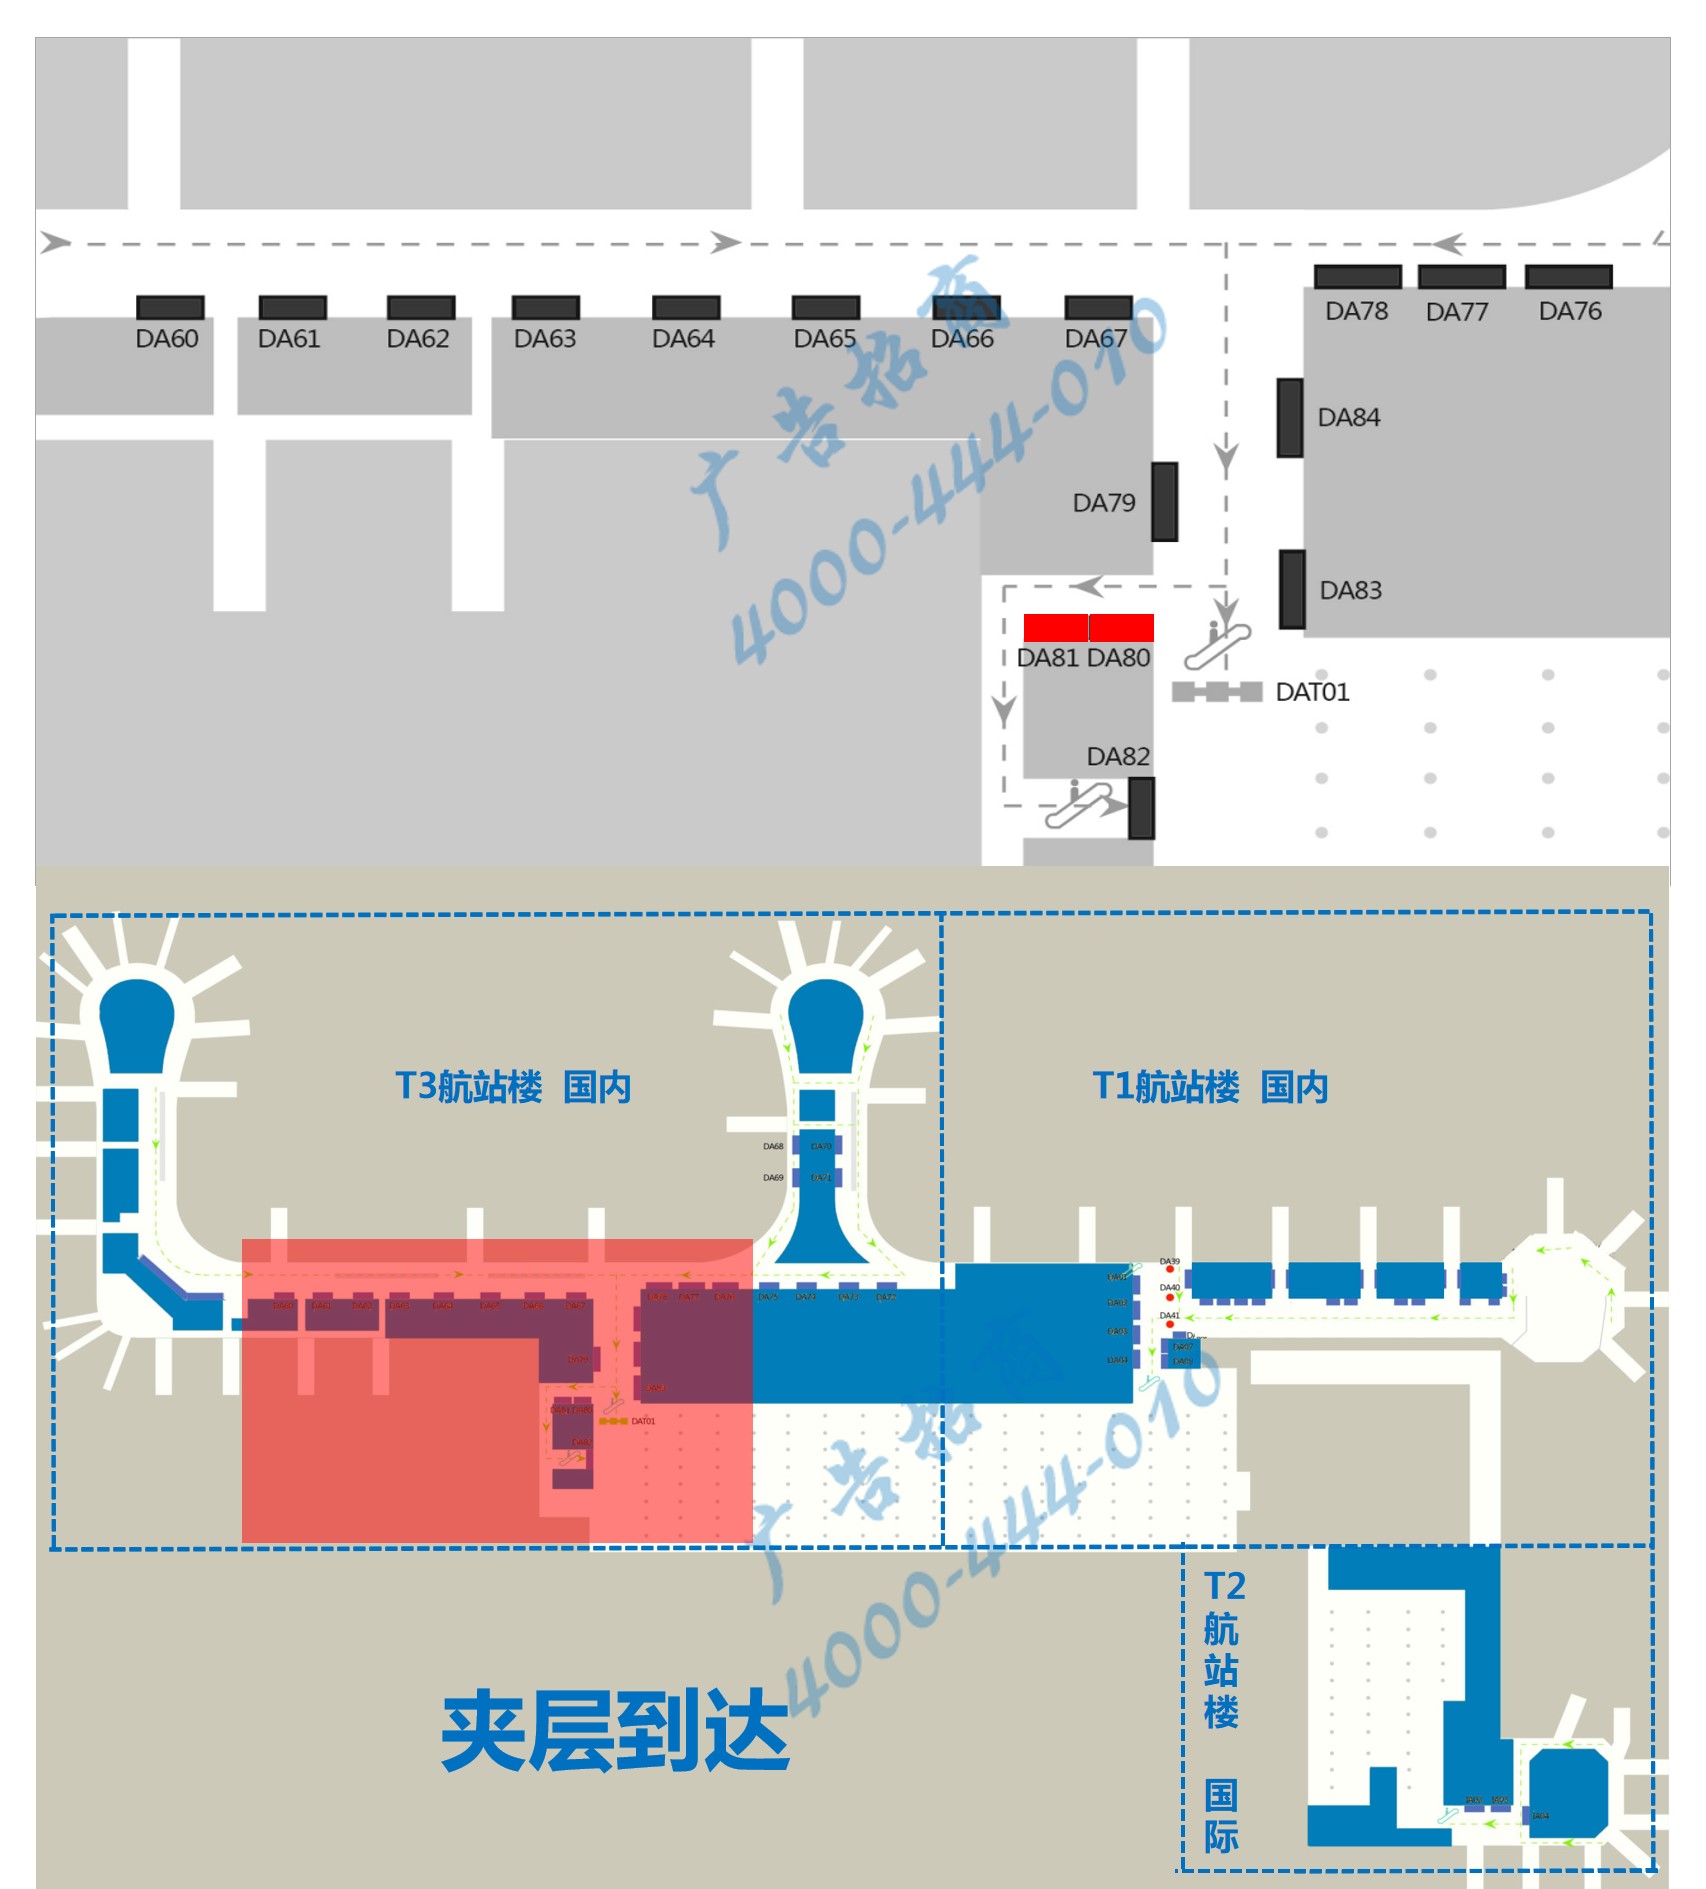 杭州机场广告-T3到达全覆盖灯箱DA80/81点位图